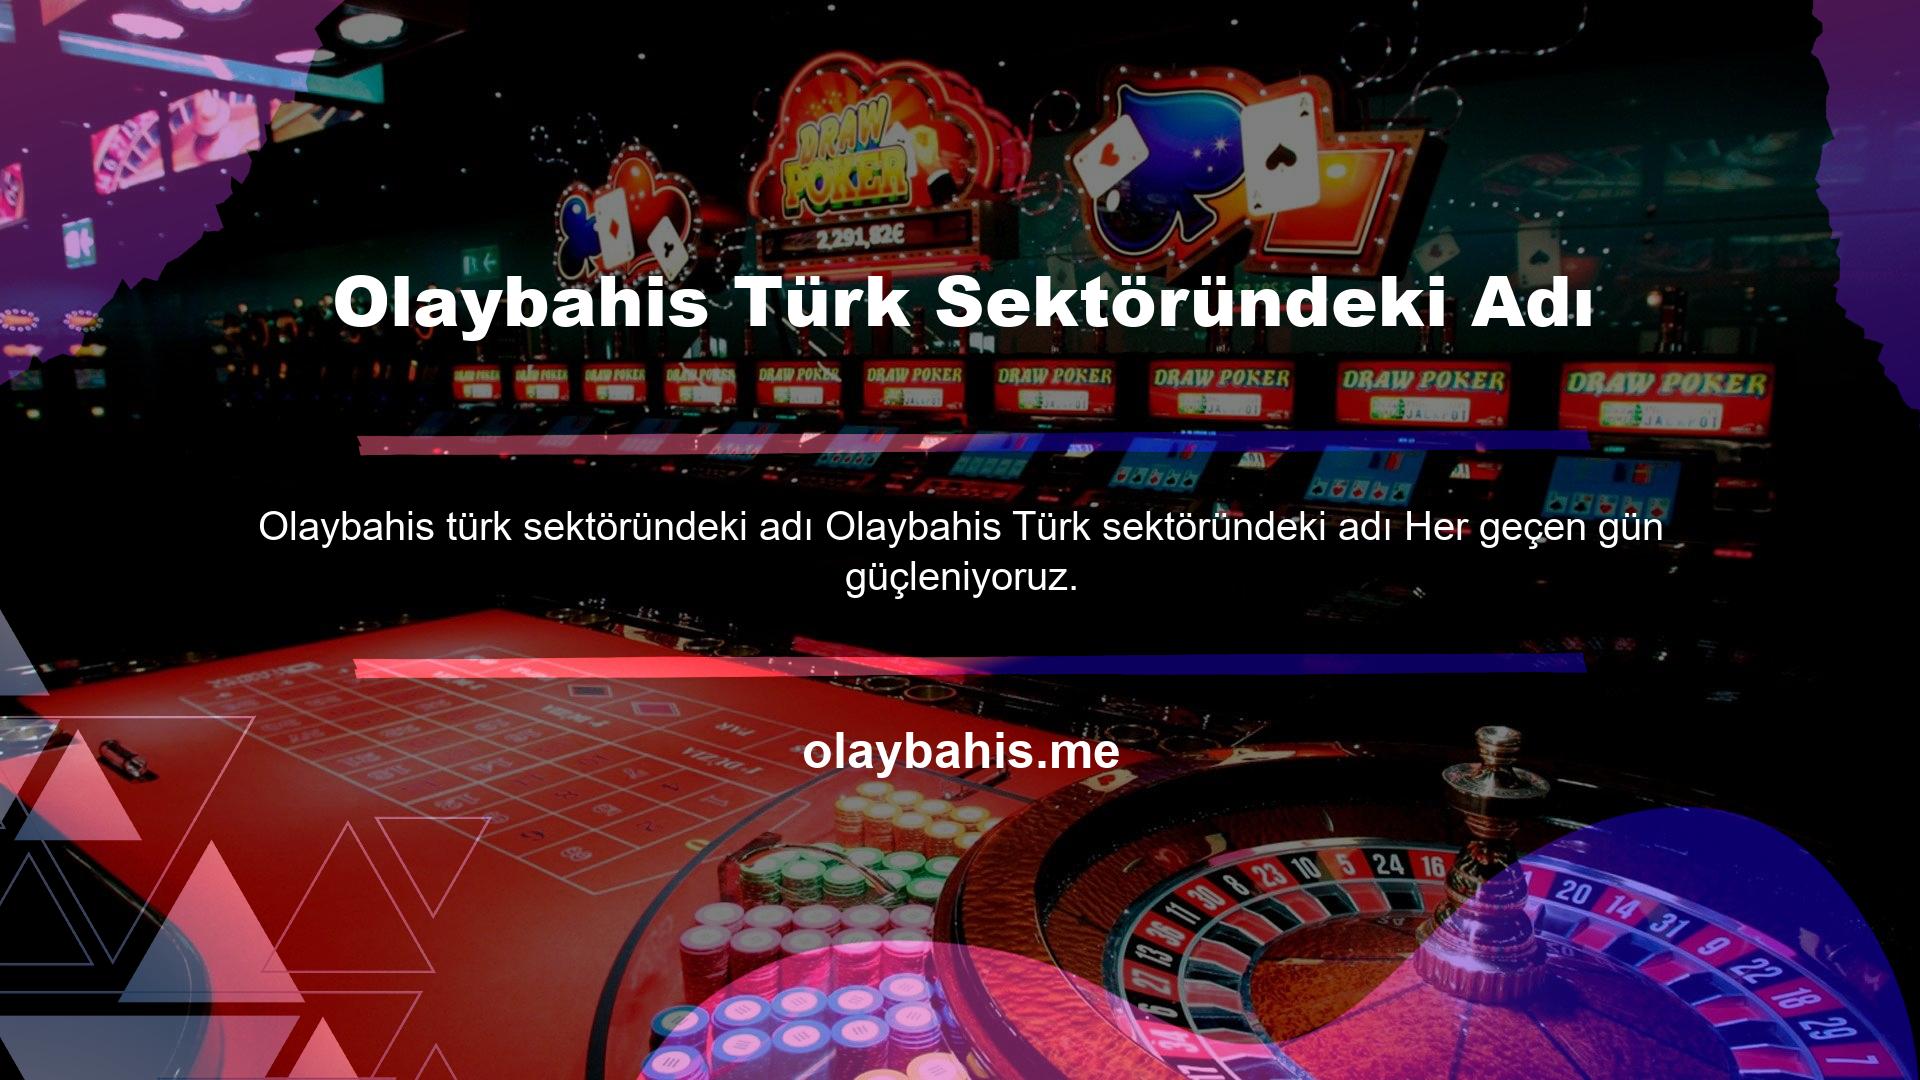 Olaybahis ismi Türk sanayisi için yeni olmasına rağmen Avrupa'da tanınan ve deneyimli bir isim olarak ortaya çıkmıştır